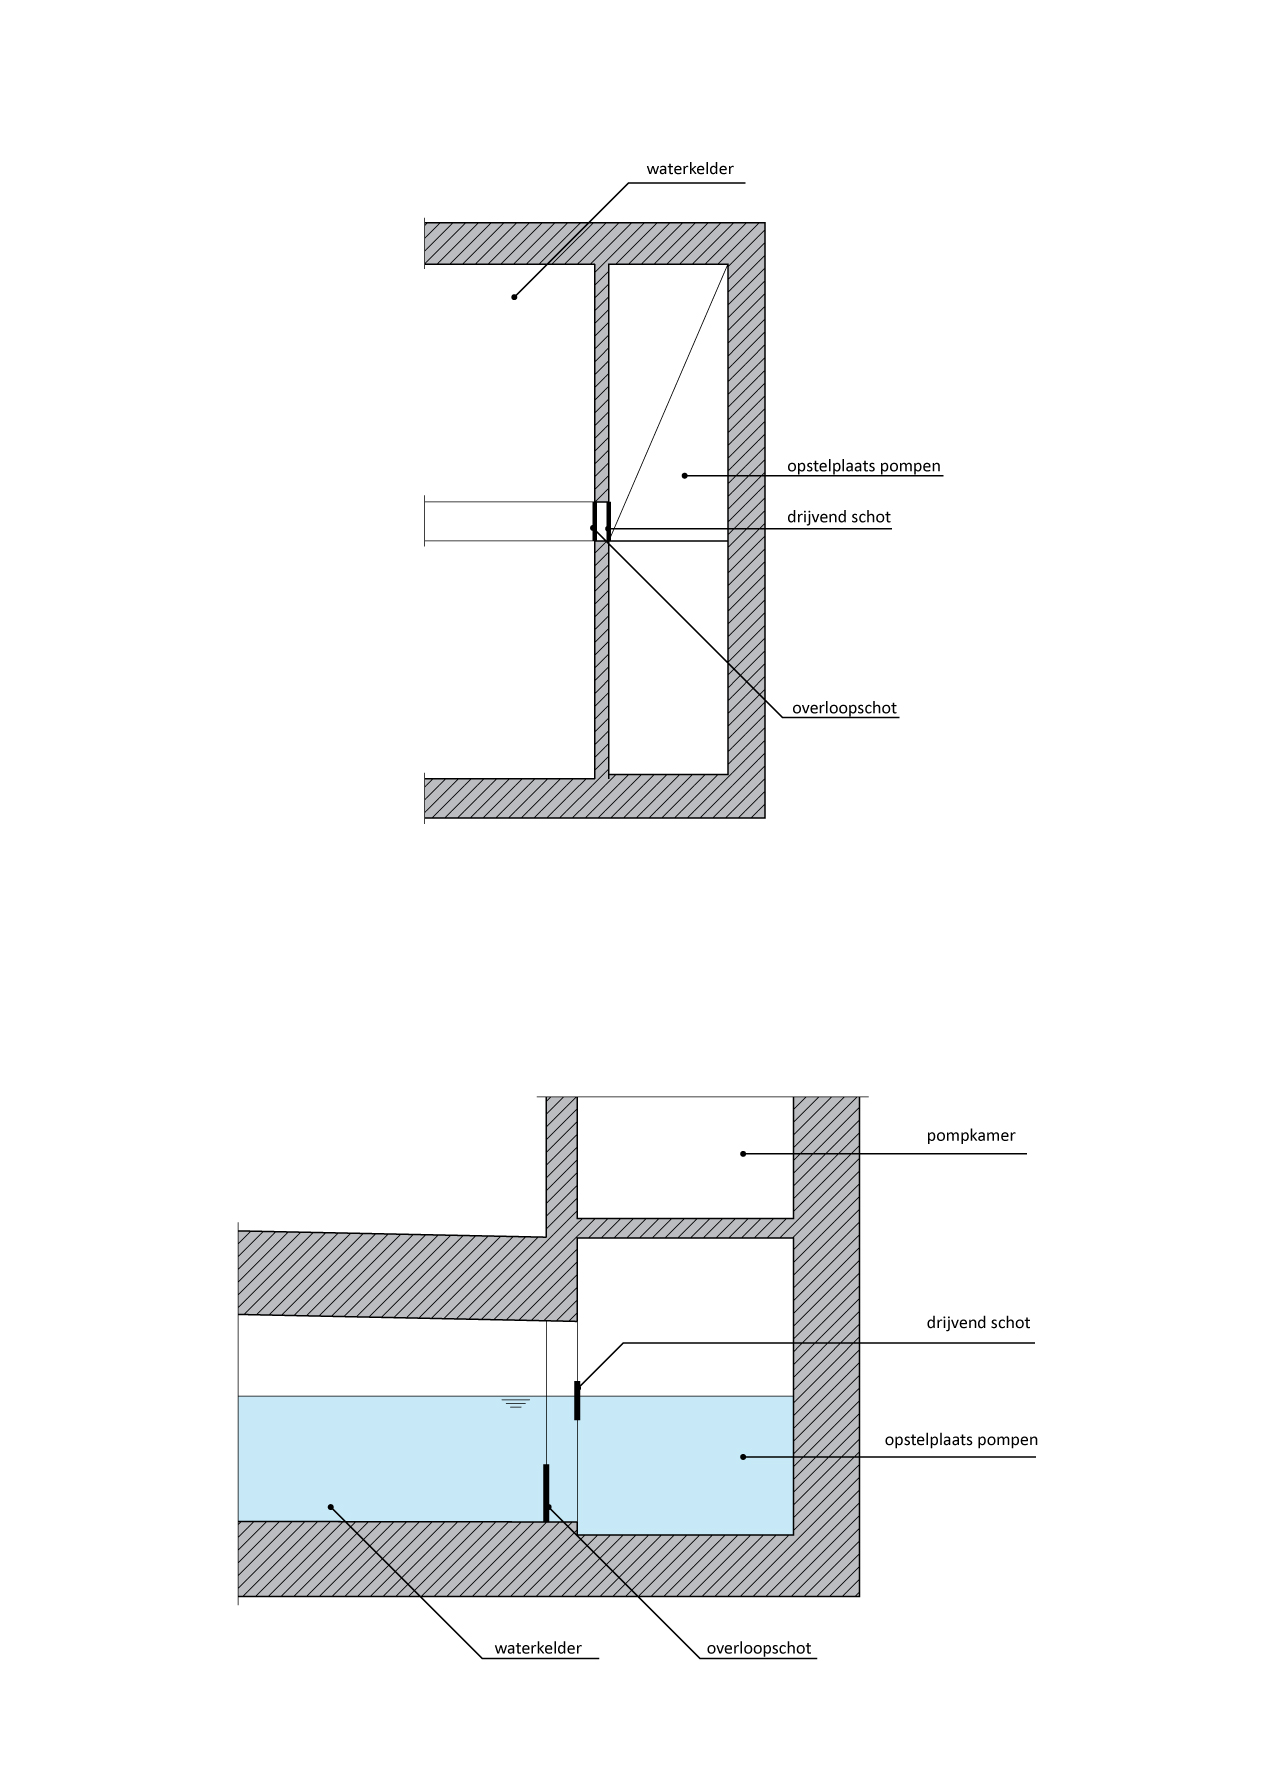 405.1 – Principe-indeling hoofdwaterkelder met bezinkbassin